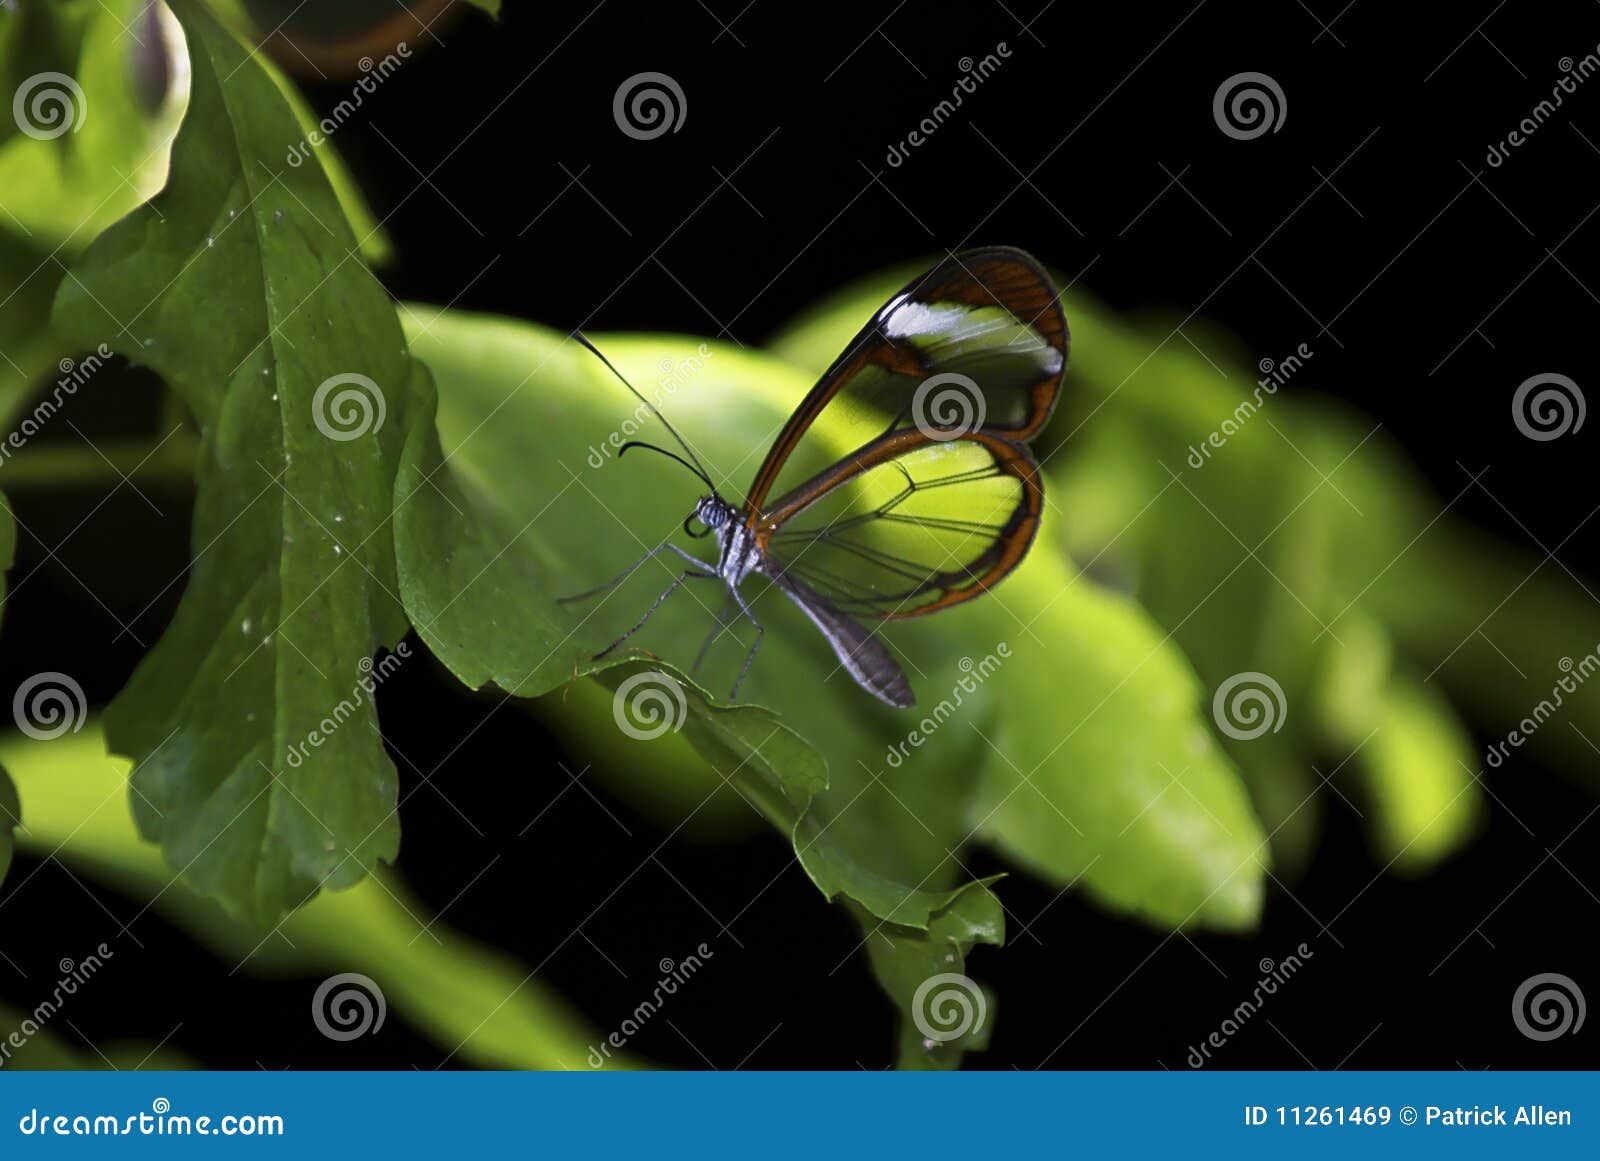 glasswing butterfly, greta oto